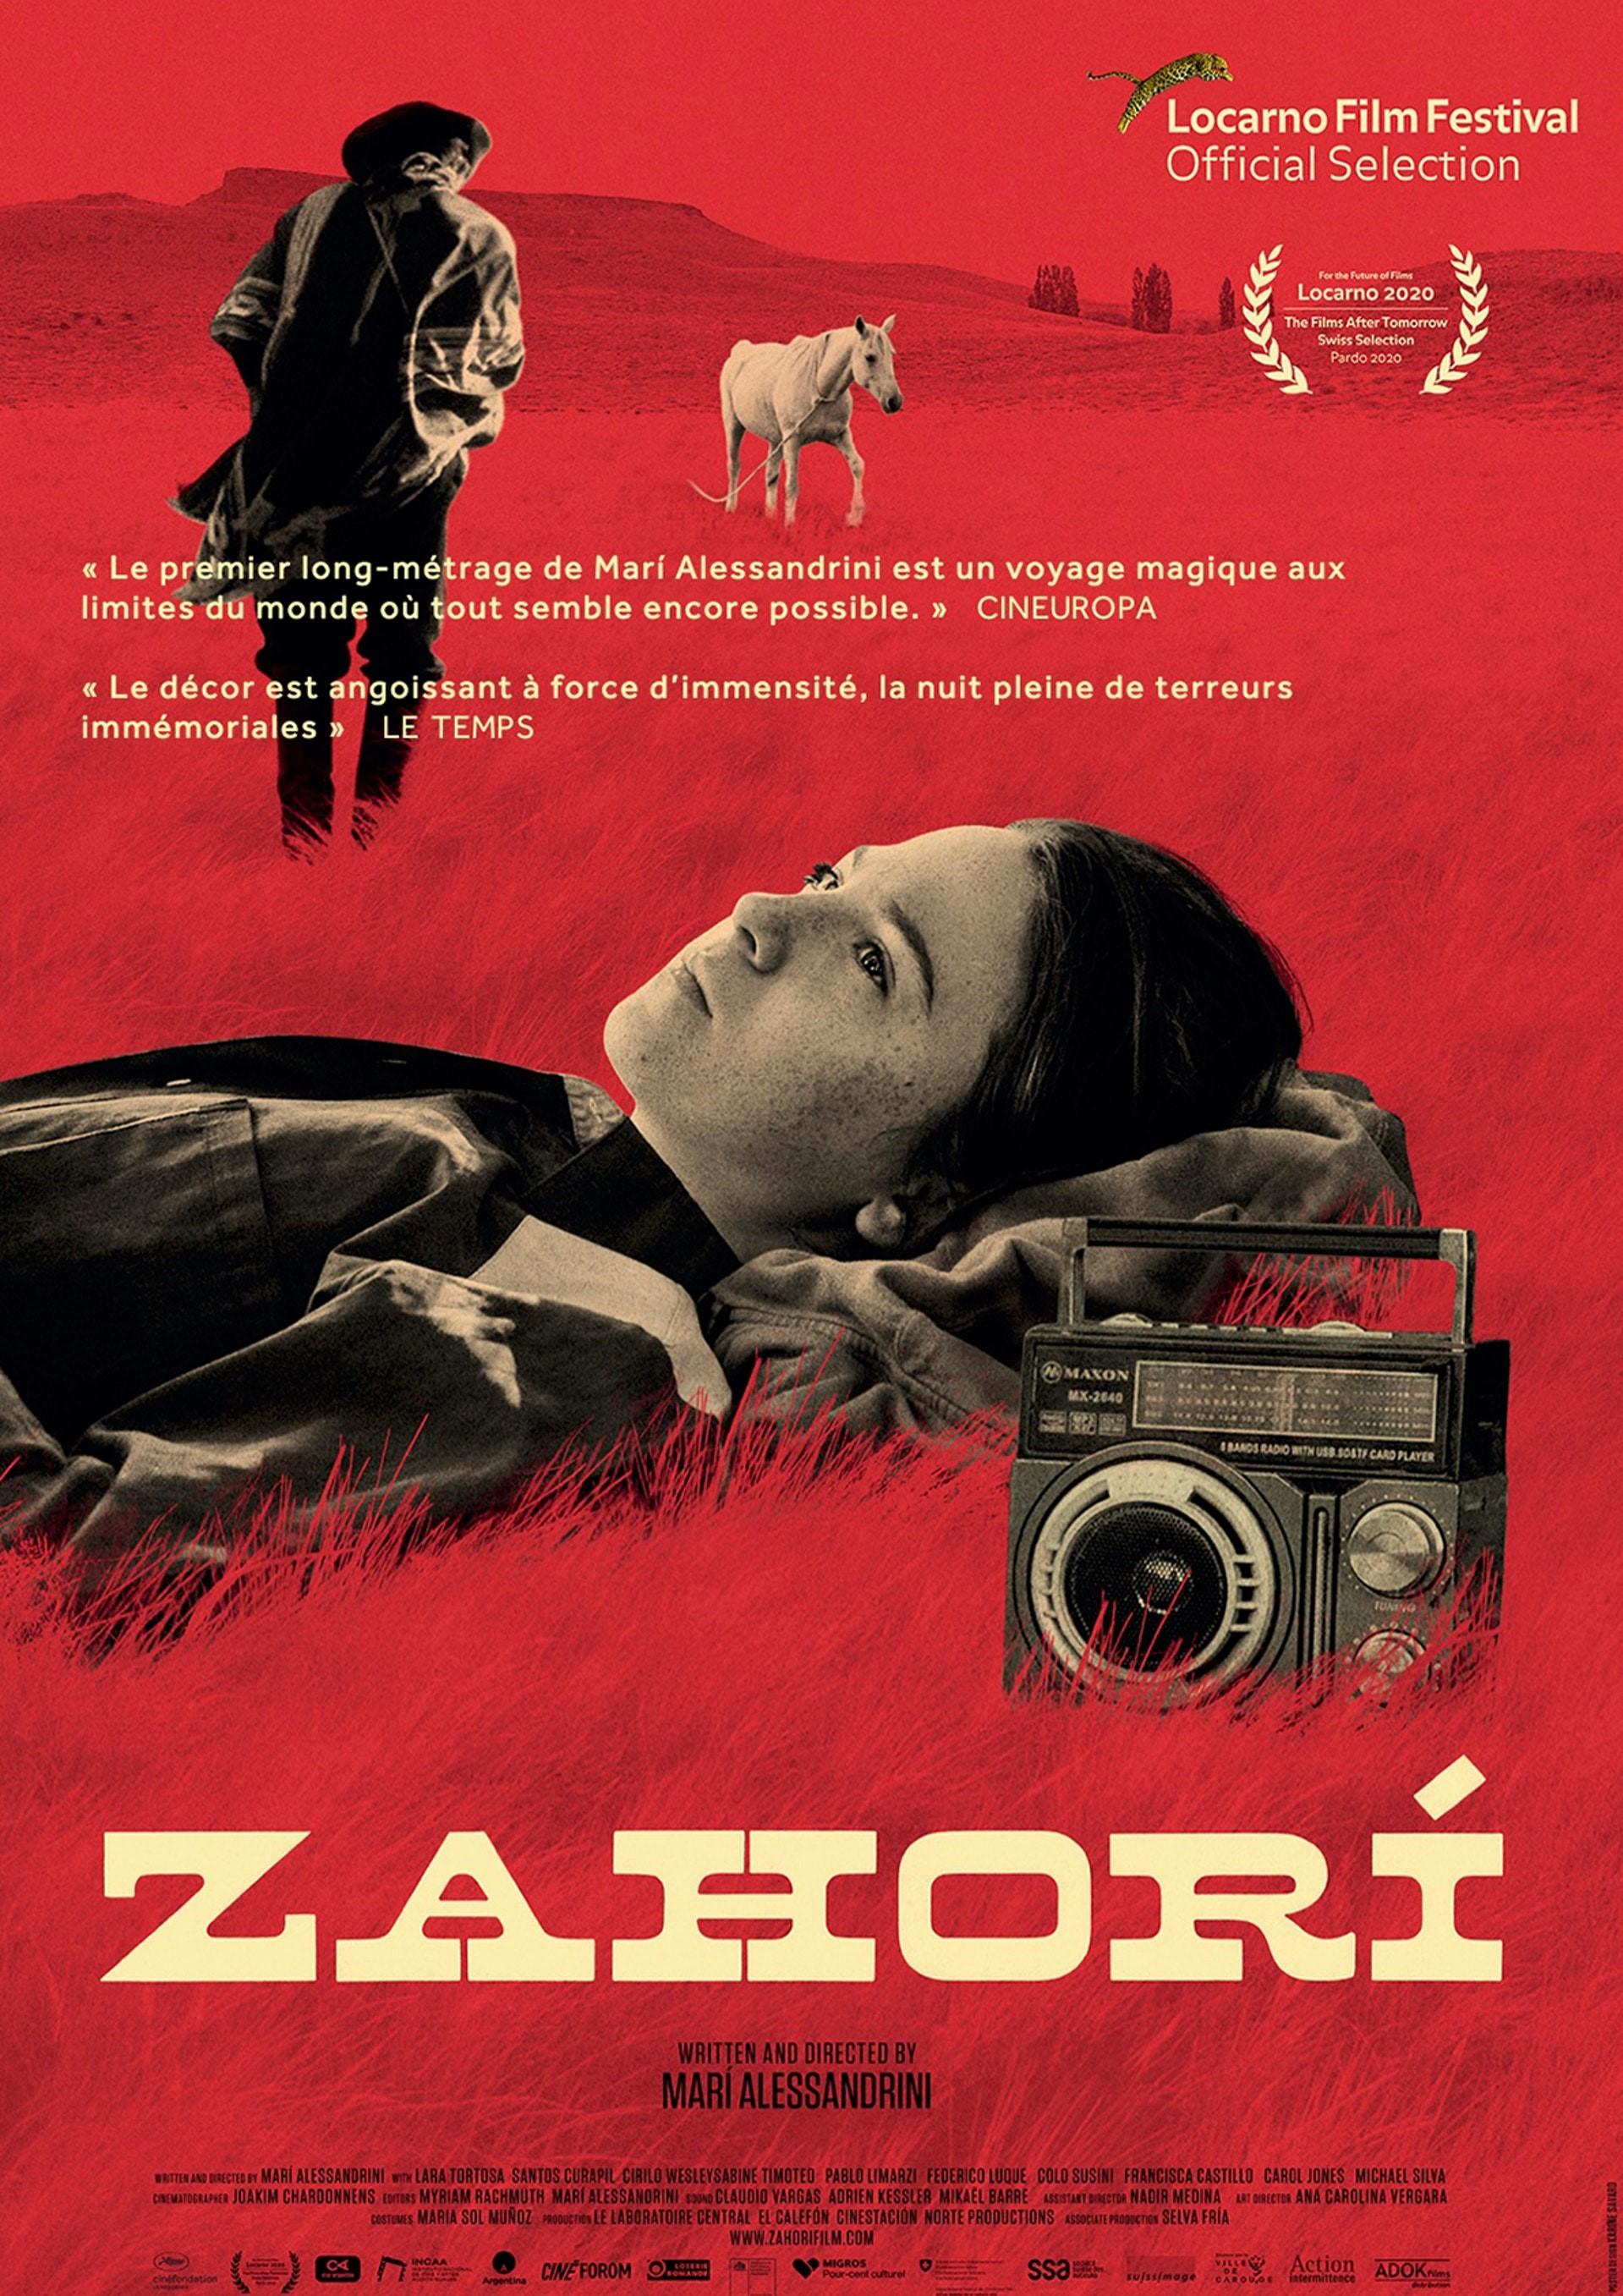 L'affiche du premier film de Marì Alessandrini, "Zahorì". [Le Laboratoire Central]